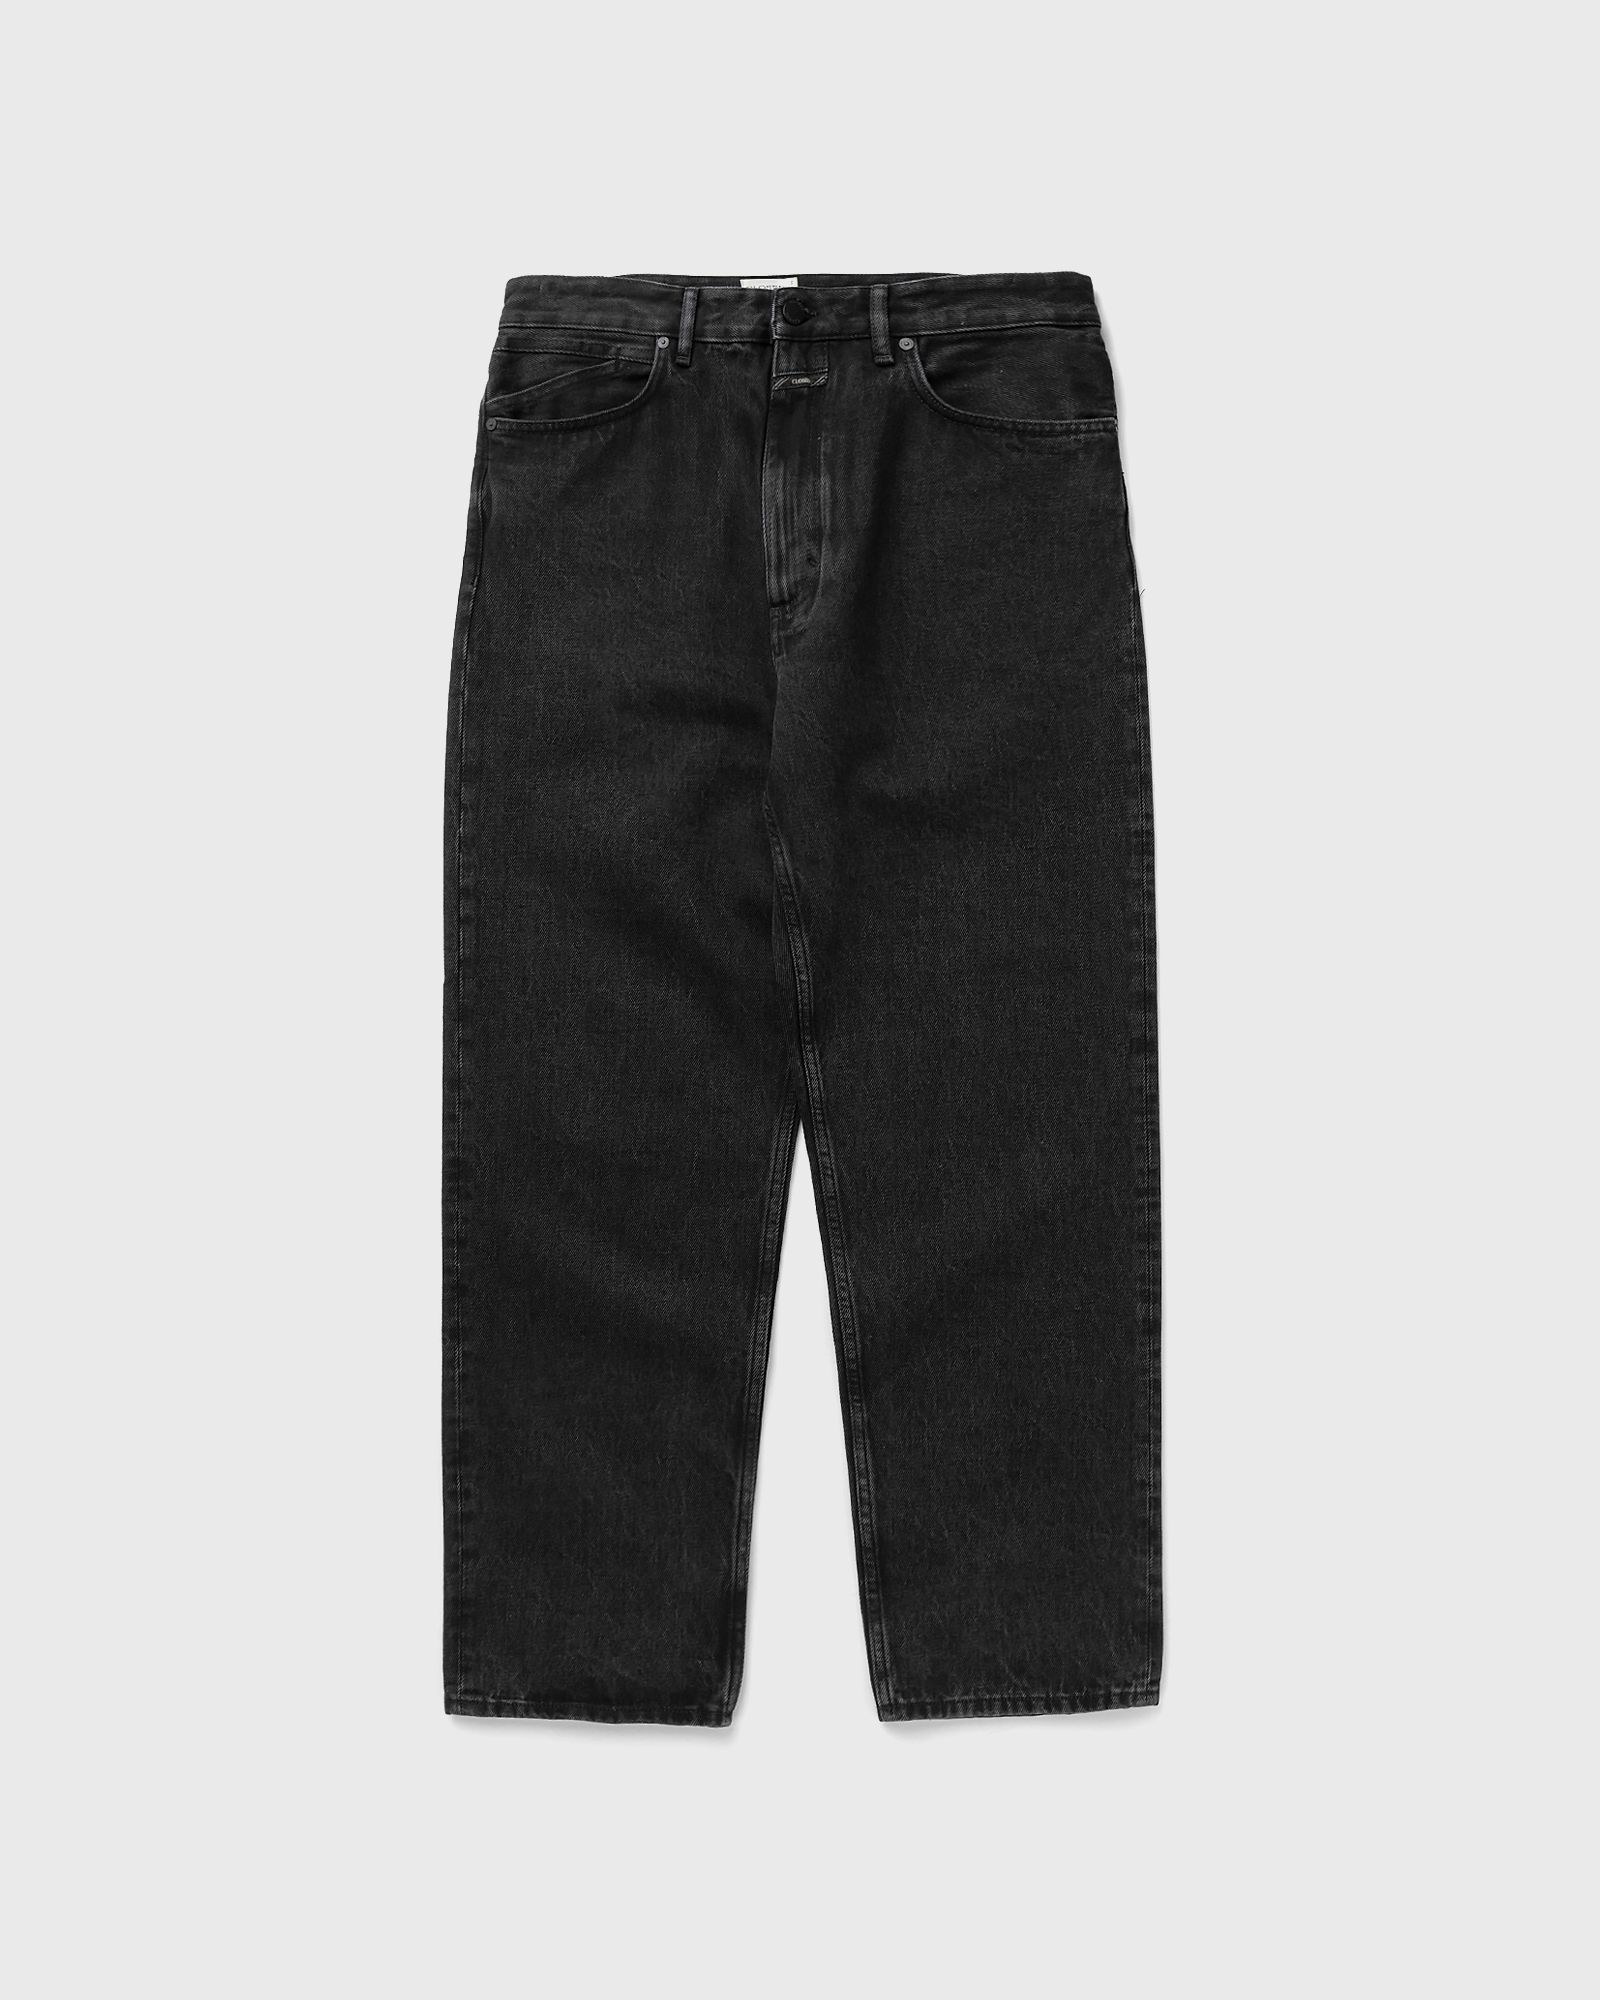 CLOSED - springdale relaxed men jeans black in größe:l